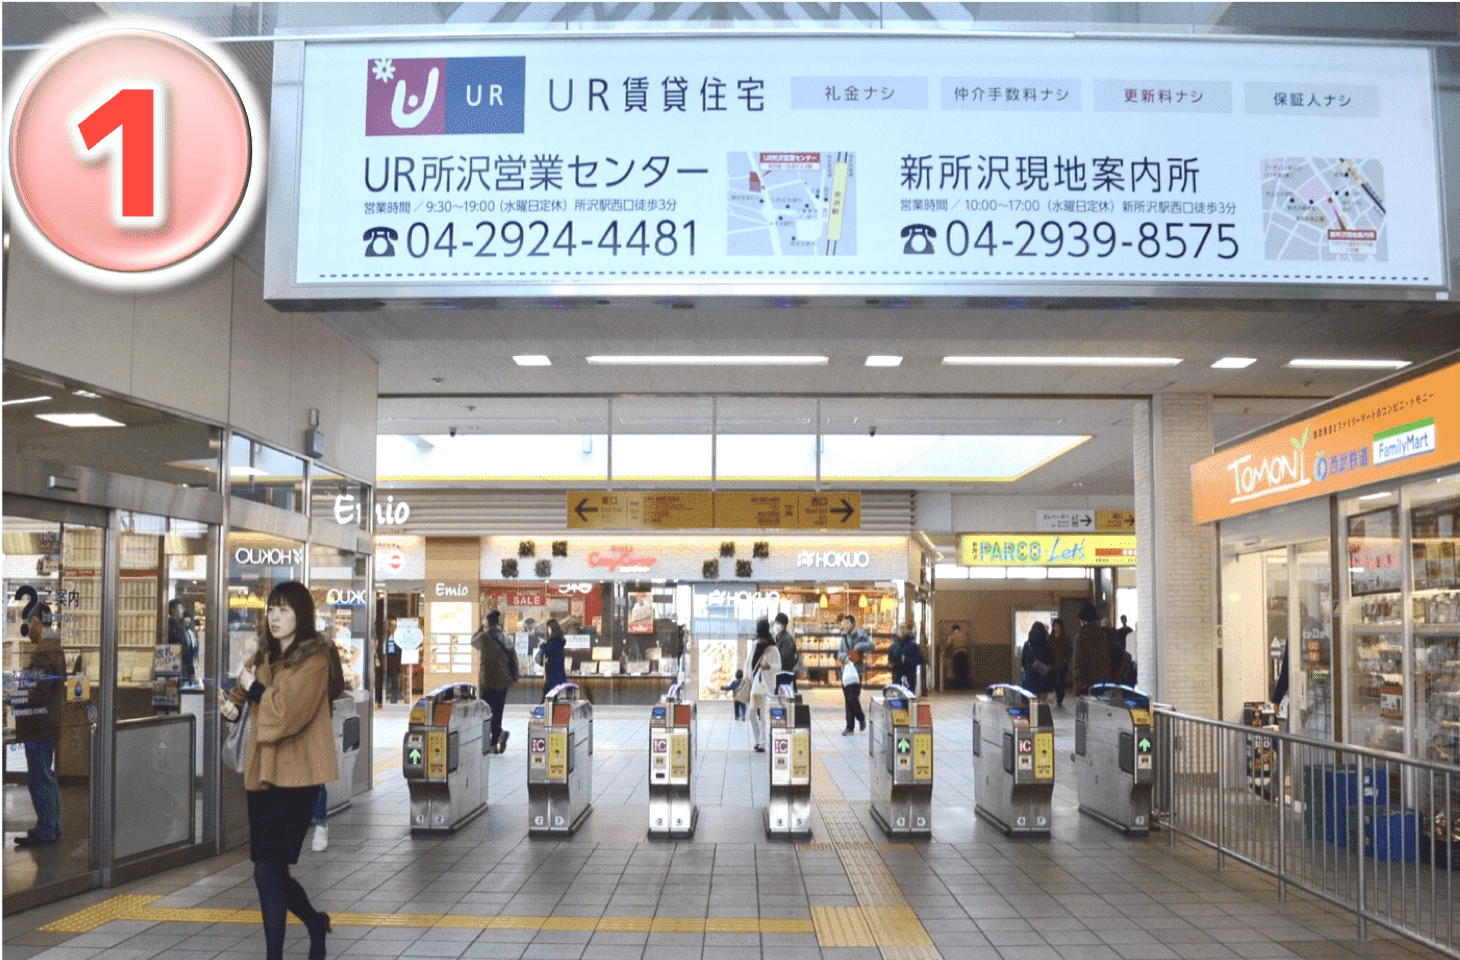 新所沢駅の改札を抜けて右側です